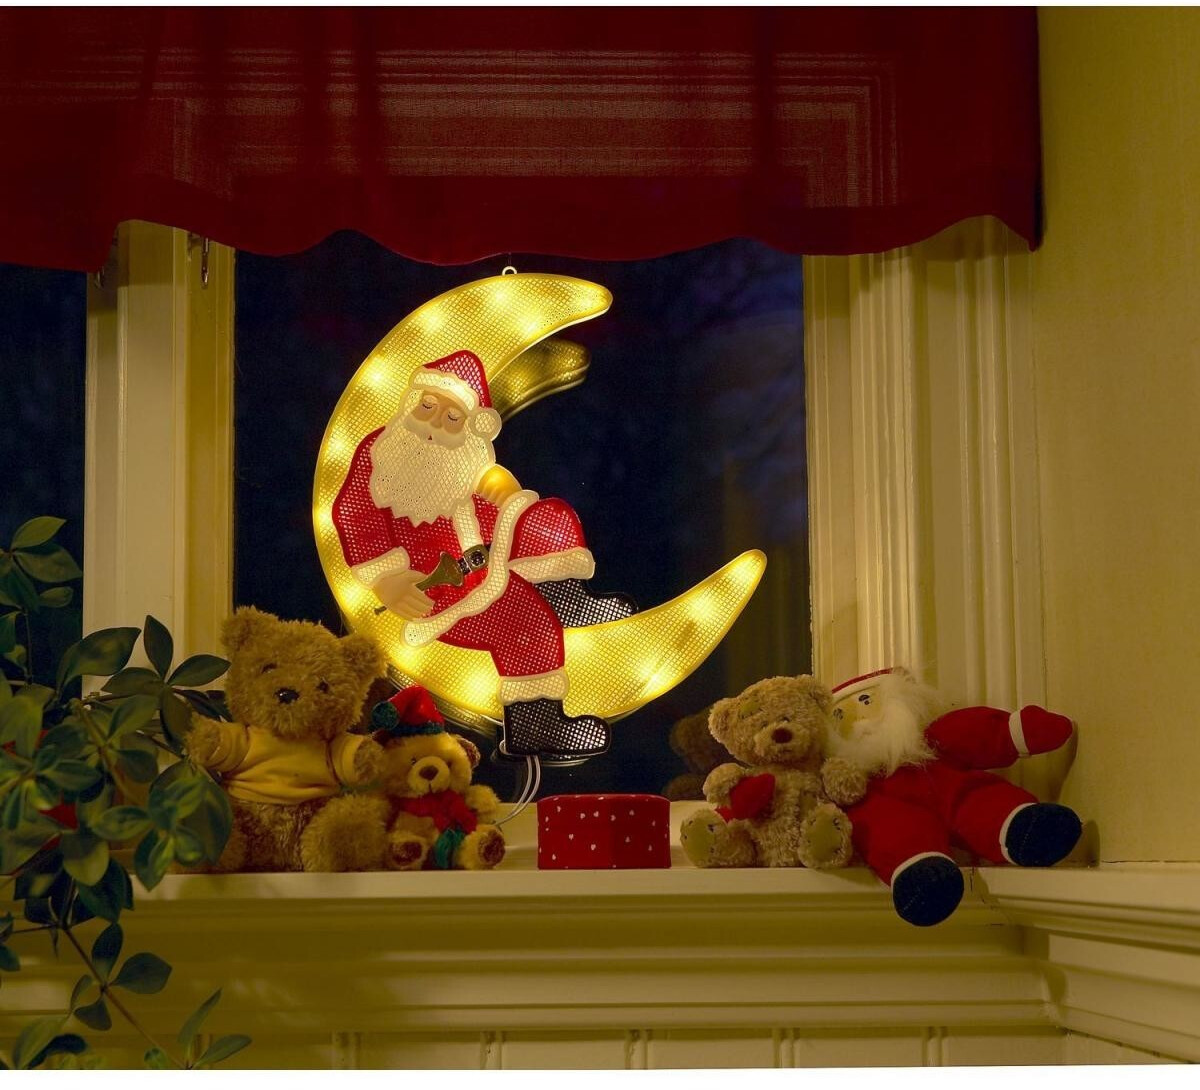 Konstsmide LED-Fensterbild Weihnachtsmann (2860-010) ab 15,92 € |  Preisvergleich bei